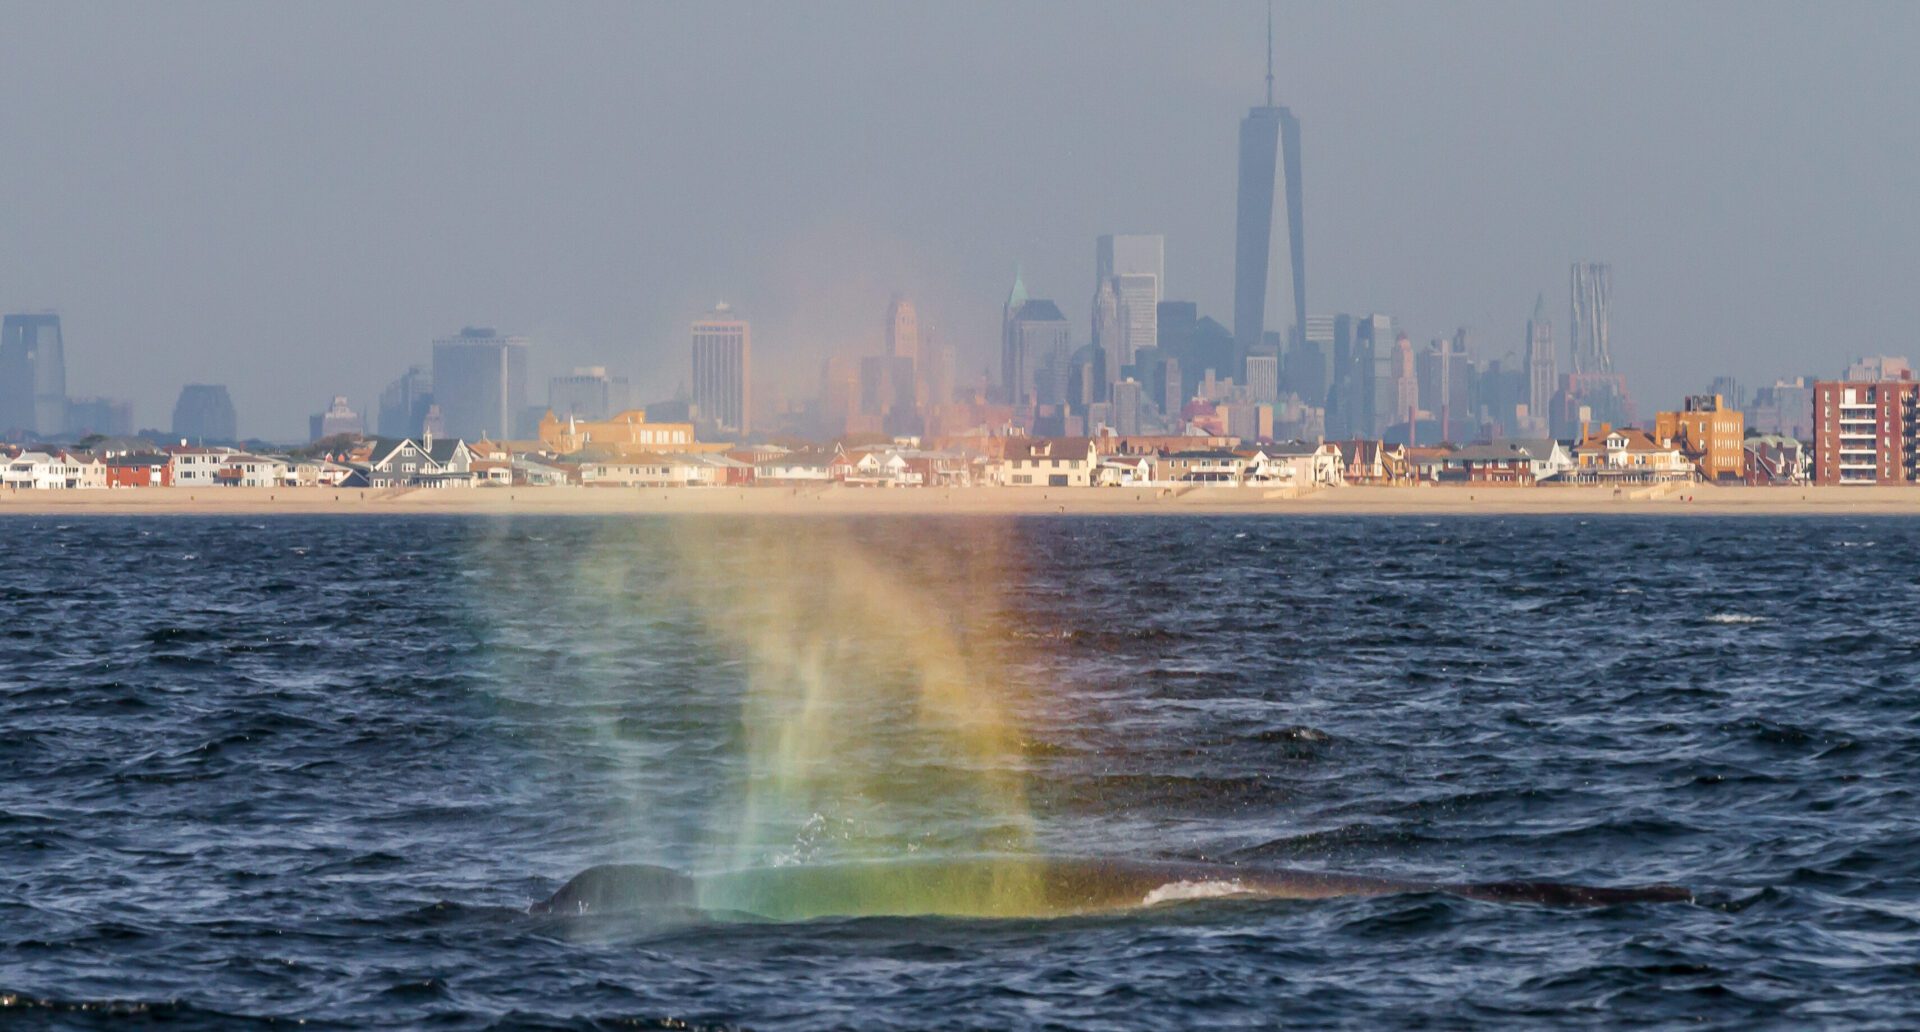 A rainbow is seen in the ocean near a city.